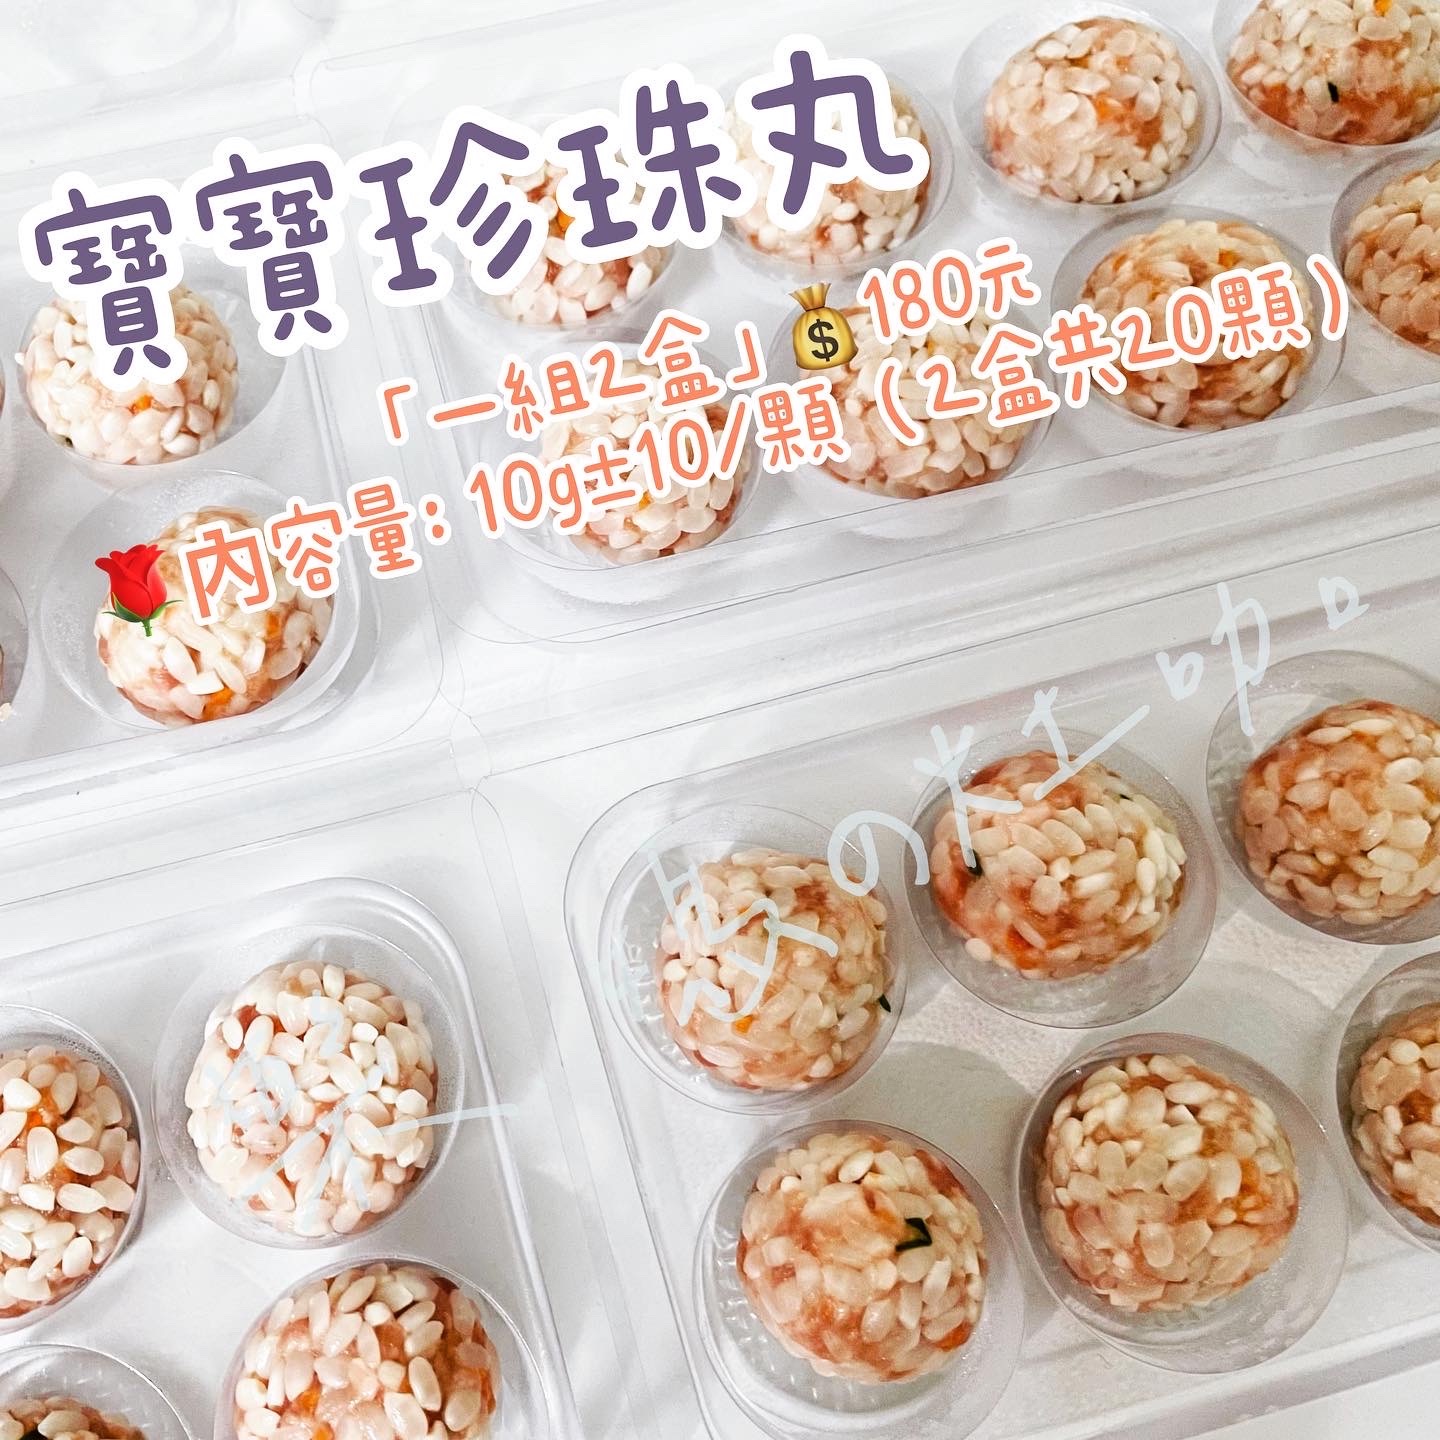 樂媽の灶咖——「寶寶珍珠丸」純白米製作不脹氣好消化